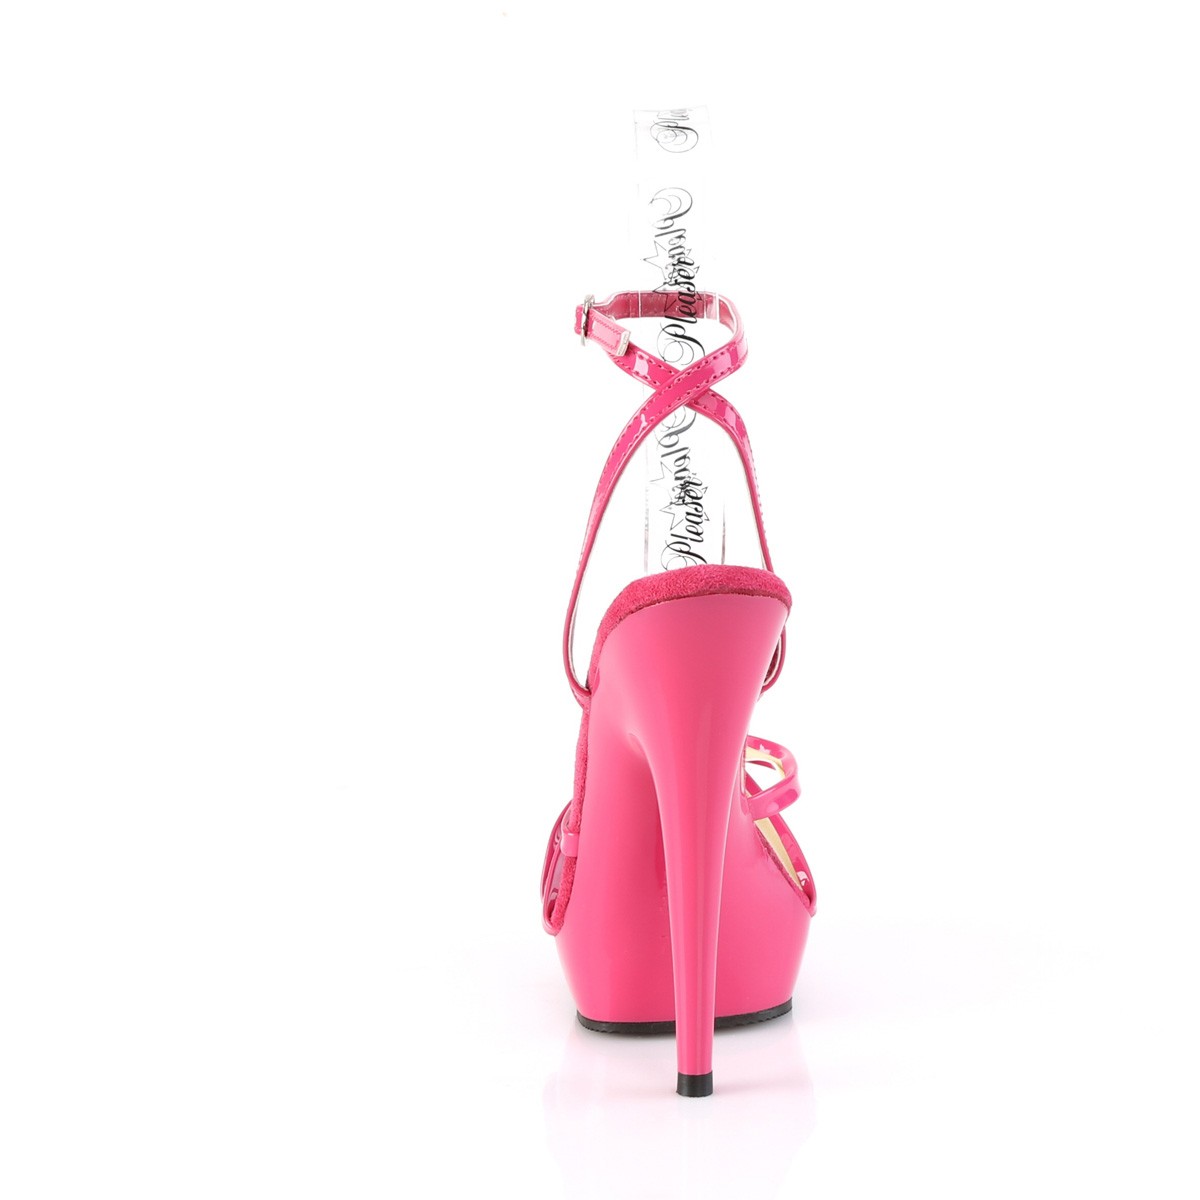 Politik Udflugt Sympatisere Pink lak sandaler 15 cm SULTRY-638 plateau sandaler høje hæle